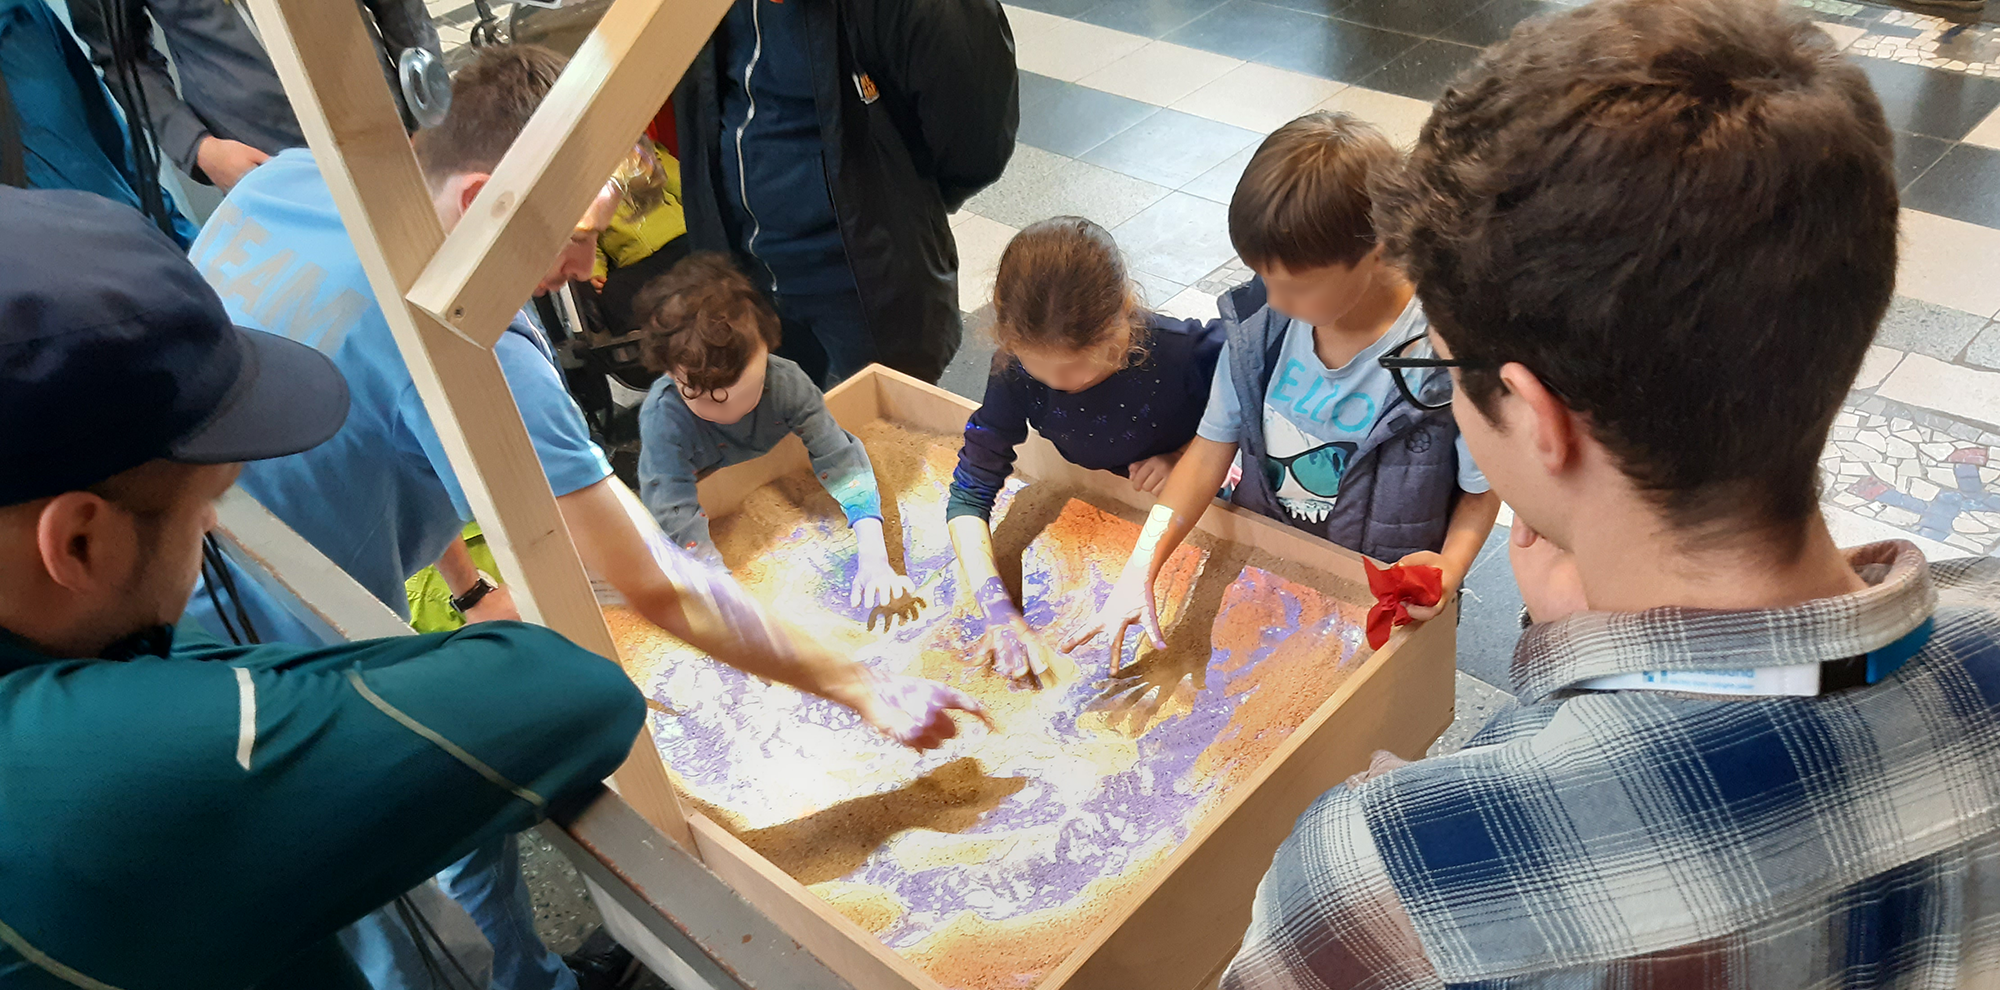 drei Kinder zeichnen Landschaften in einer Sandbox die mittels Licht Landschaftsveränderungen simulieren kann, ein Erwachsener erklärt und mehrere weitere Erwachsene beobachten